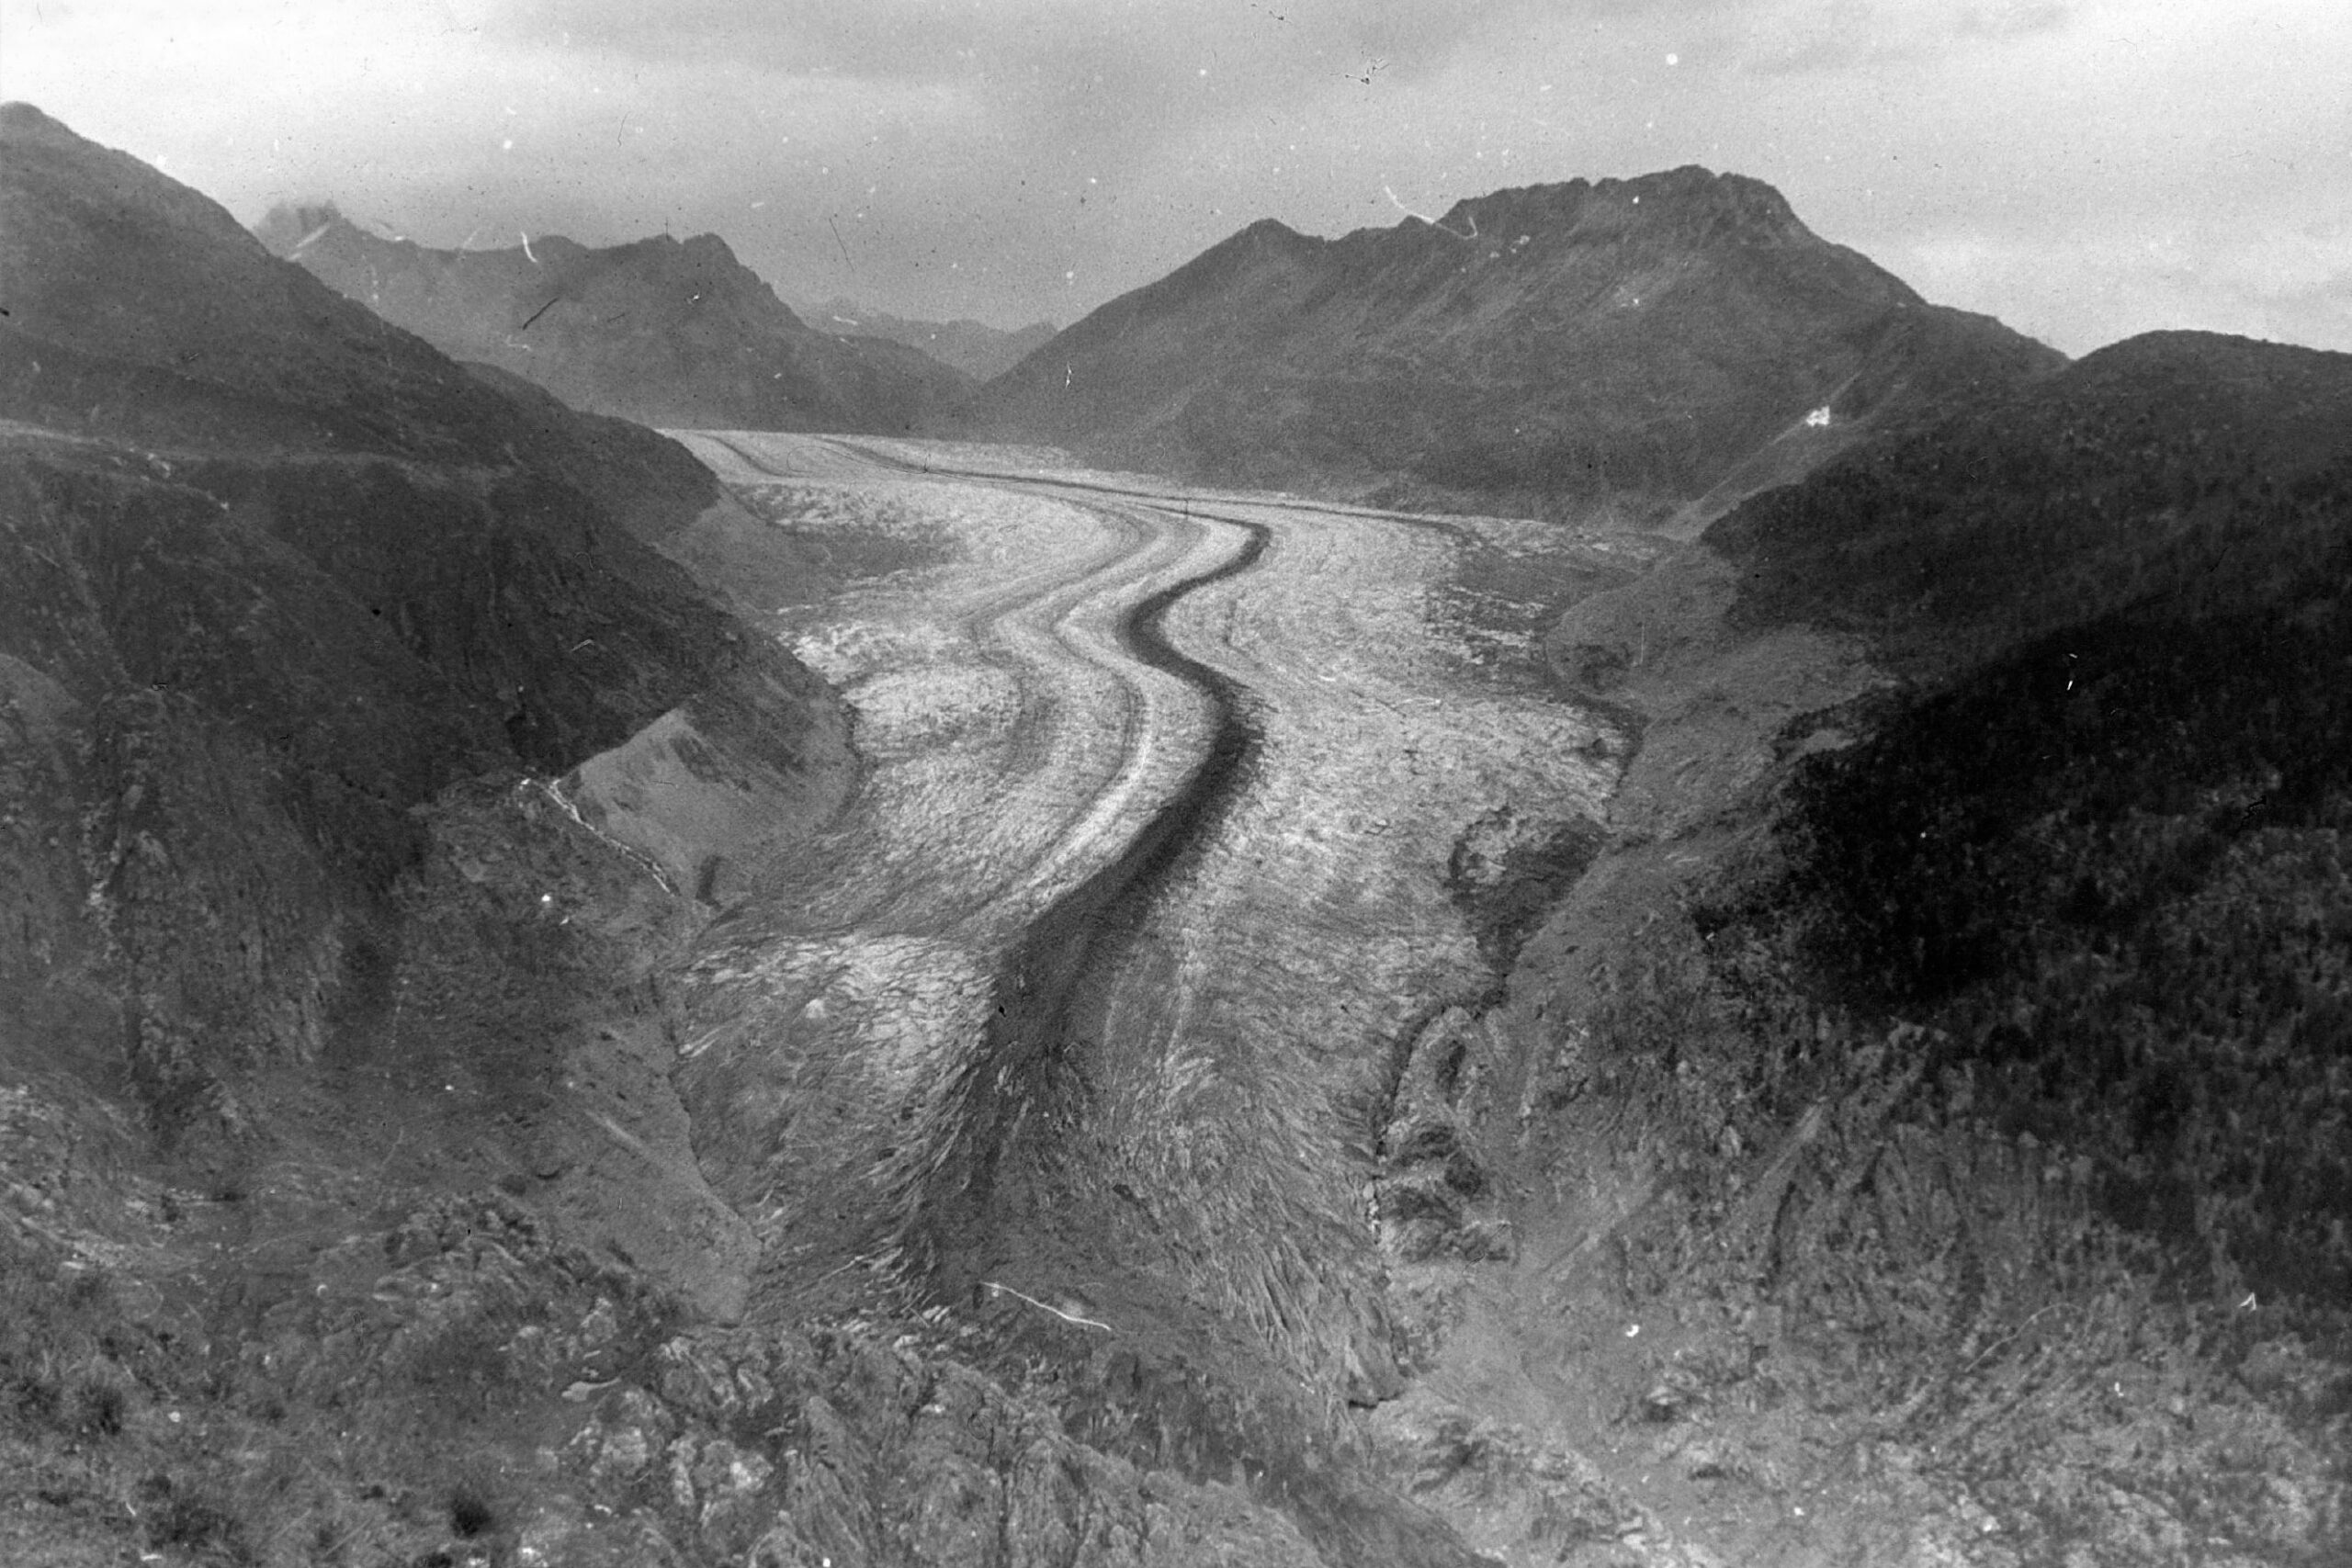 Aletschgletscher in 1942